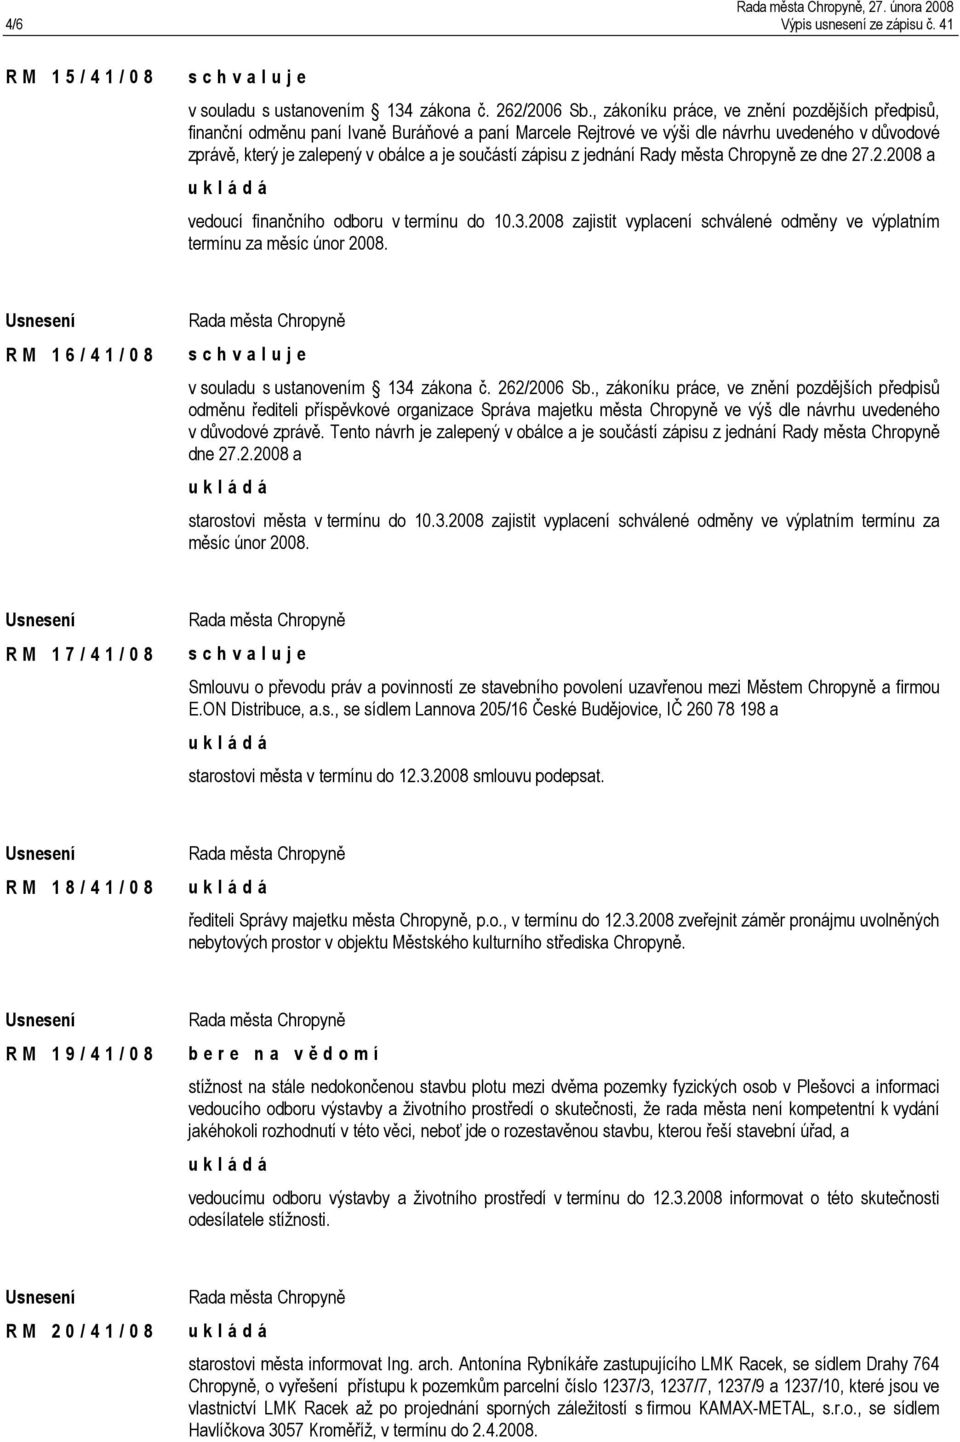 zápisu z jednání Rady města Chropyně ze dne 27.2.2008 a vedoucí finančního odboru v termínu do 10.3.2008 zajistit vyplacení schválené odměny ve výplatním termínu za měsíc únor 2008.